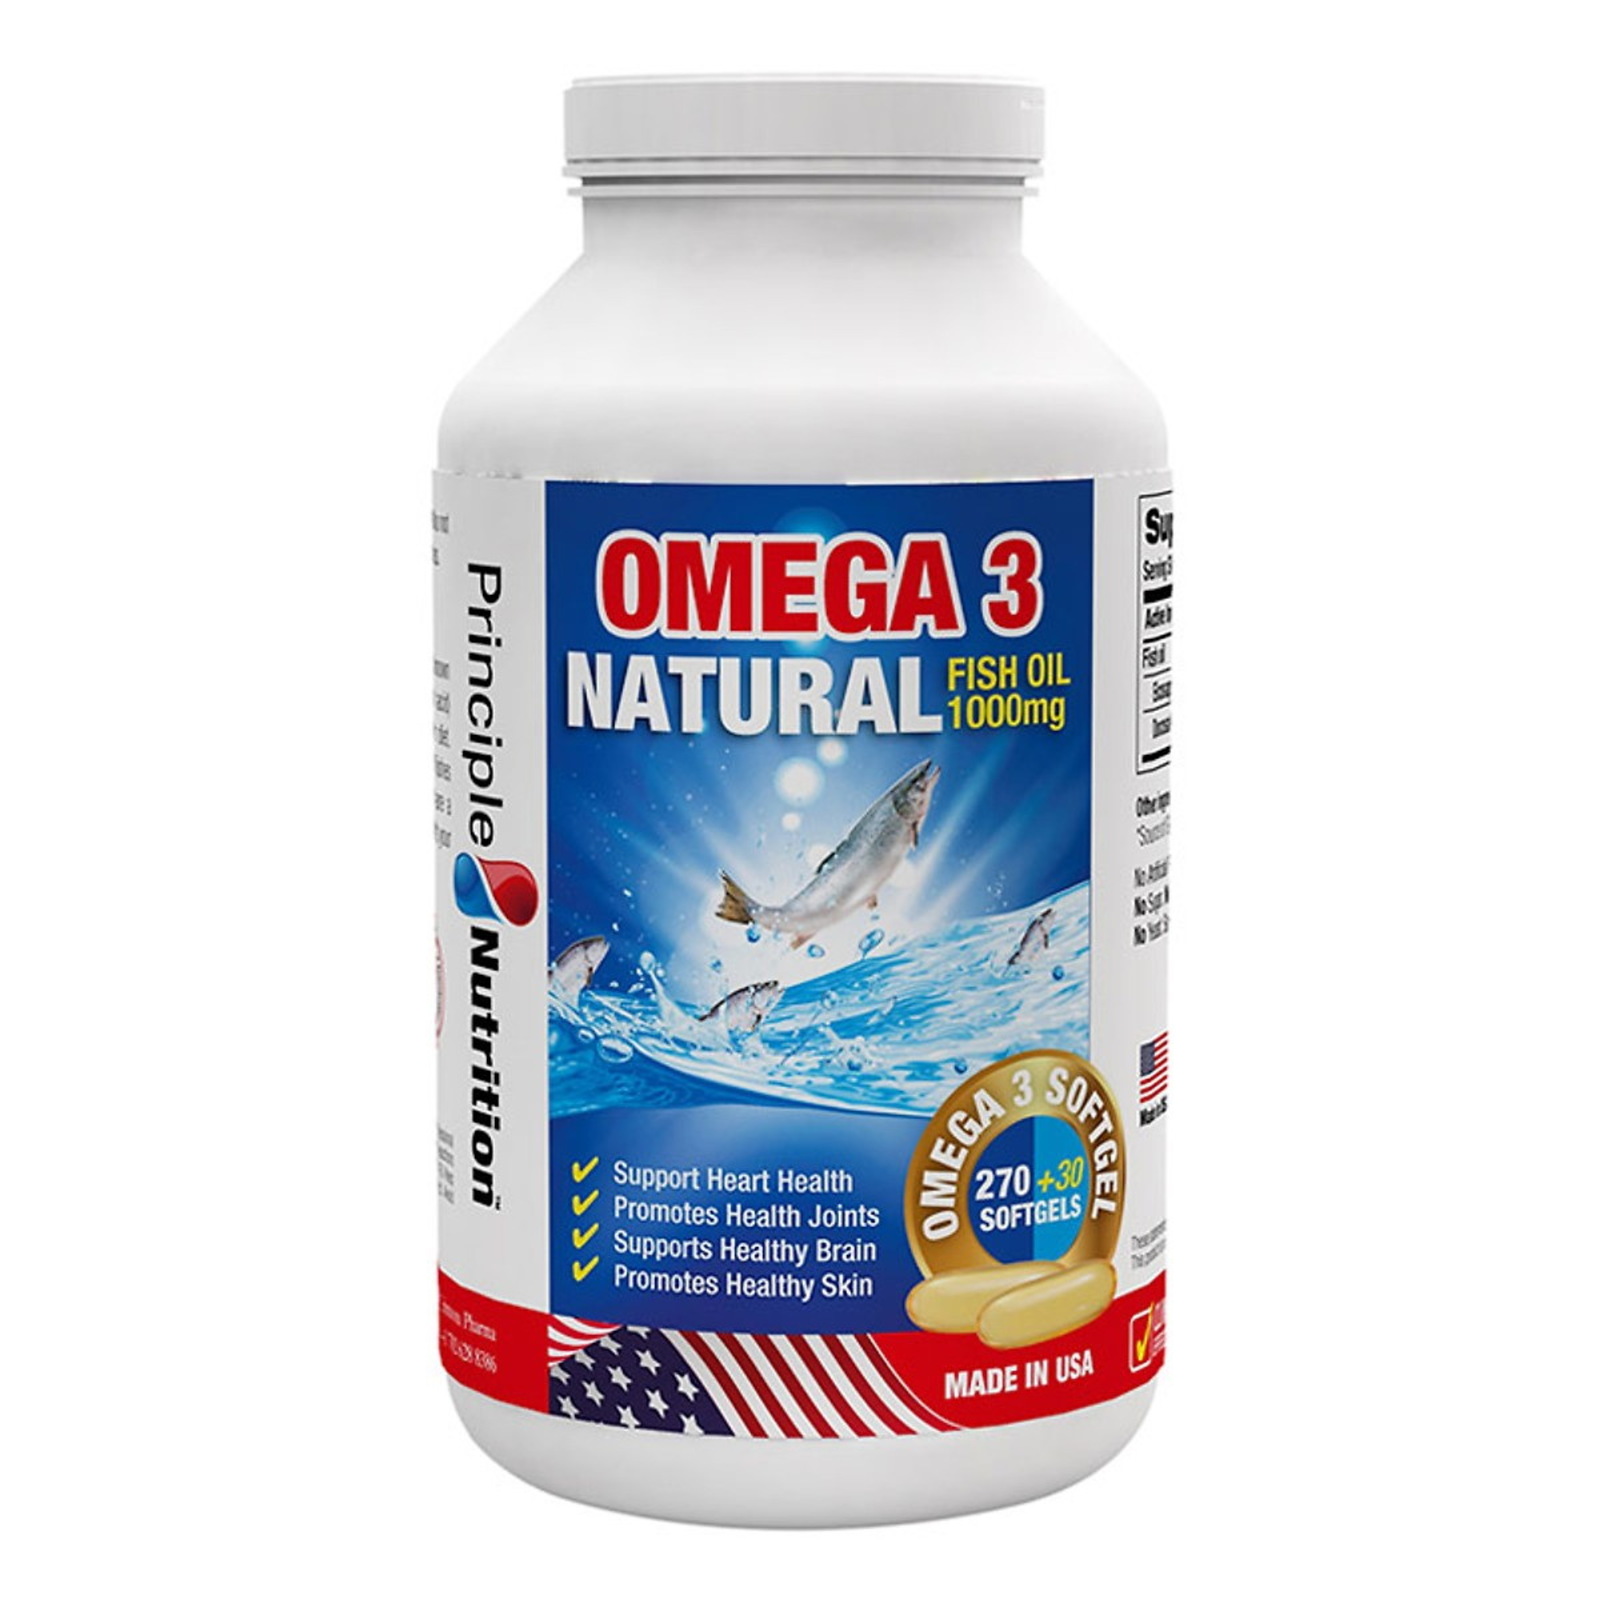 Omega 3 Principle Nutrition ảnh 1